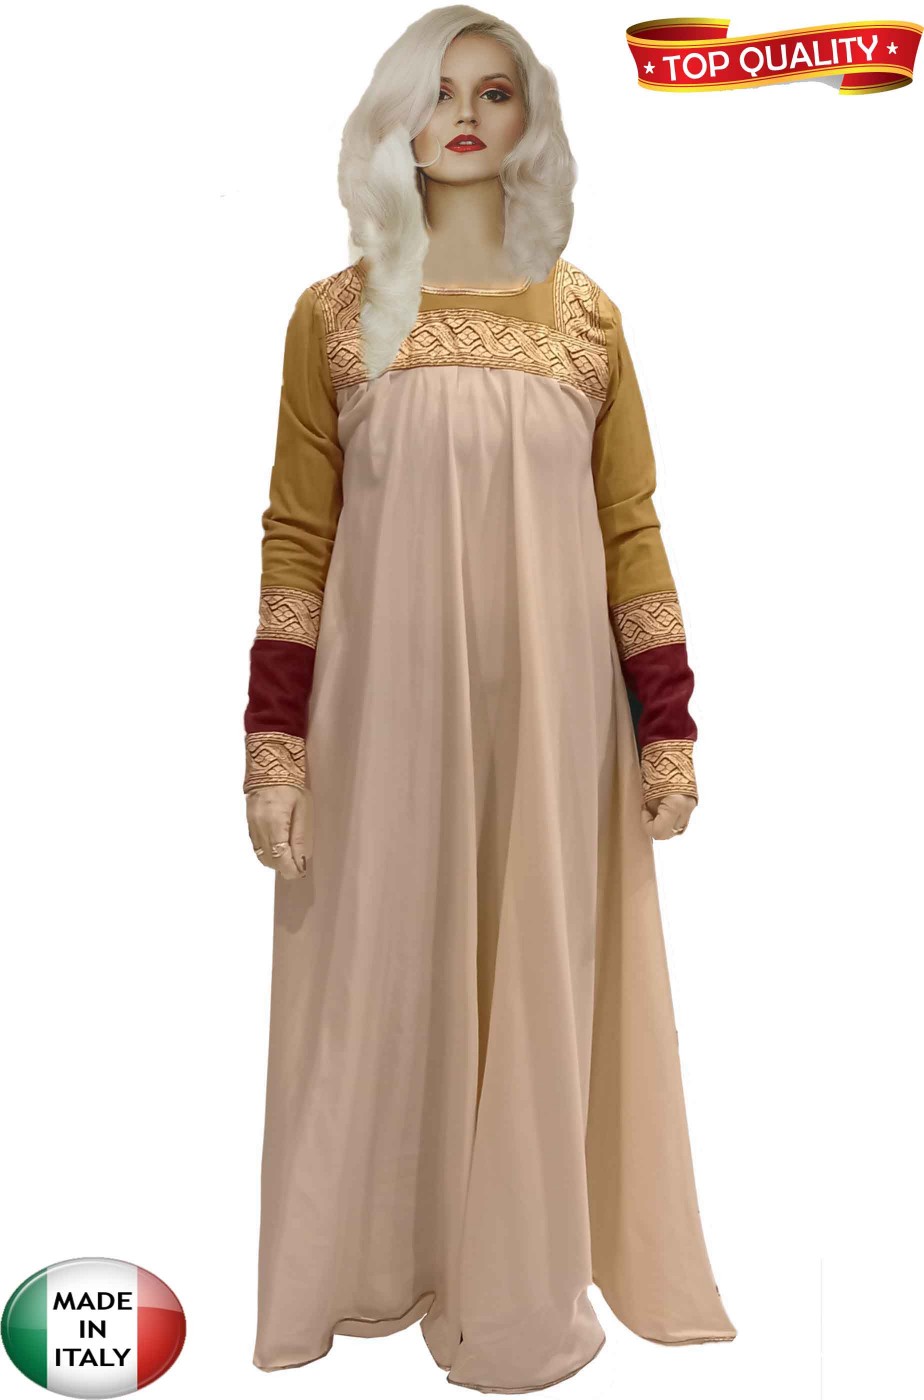 Vestito medievale nobildonna dama del castello